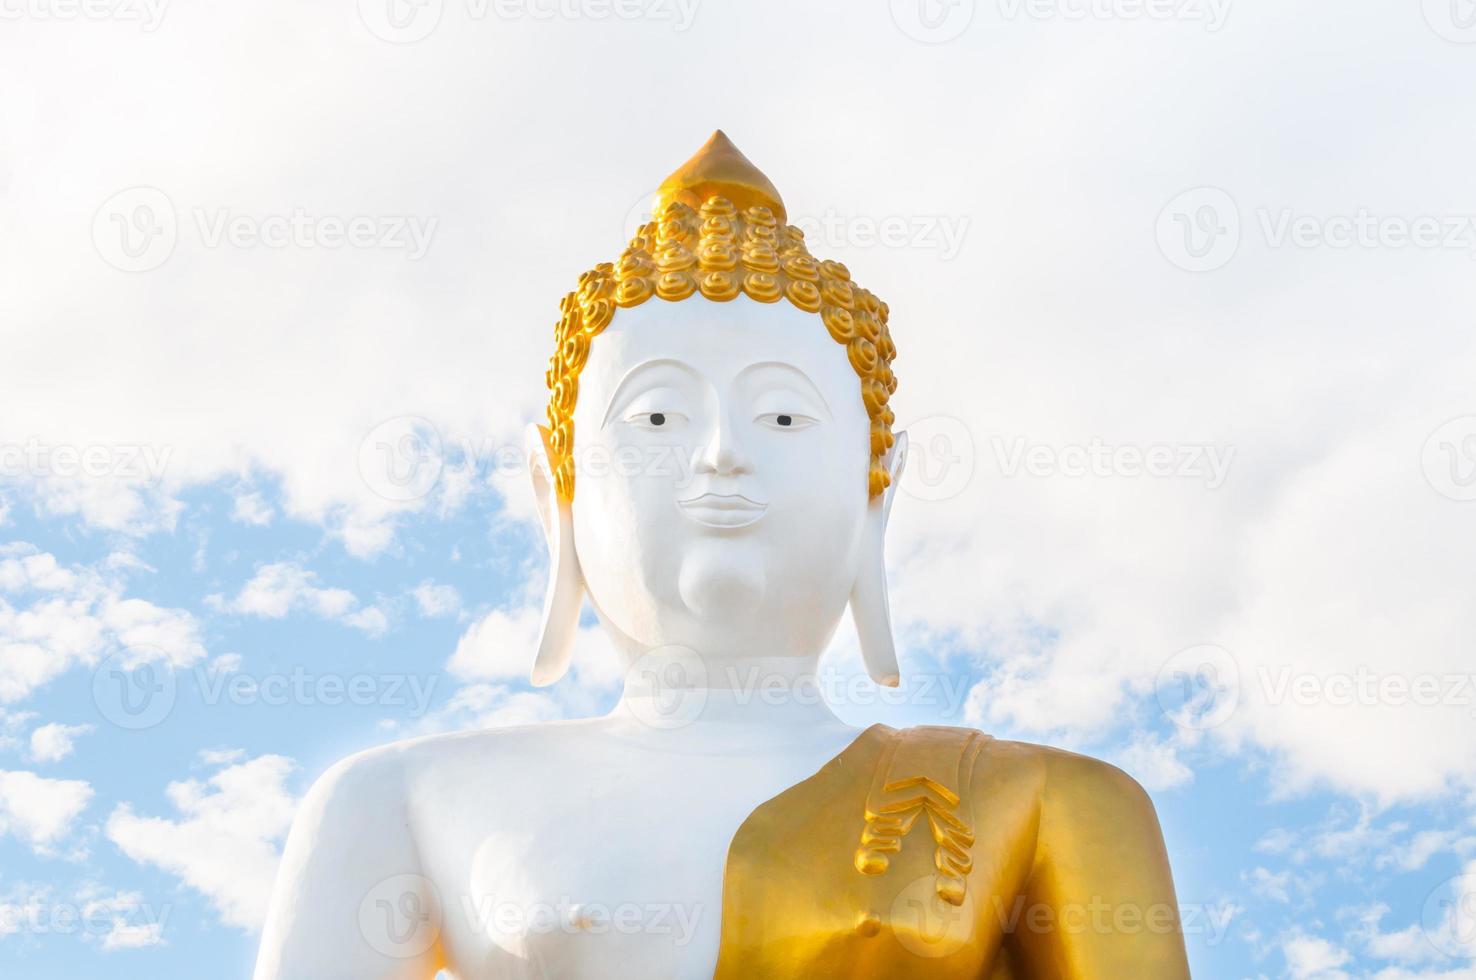 grande Buda estátua wat phra este doi Kham às Chiang mai, tailandês têmpora norte Tailândia foto